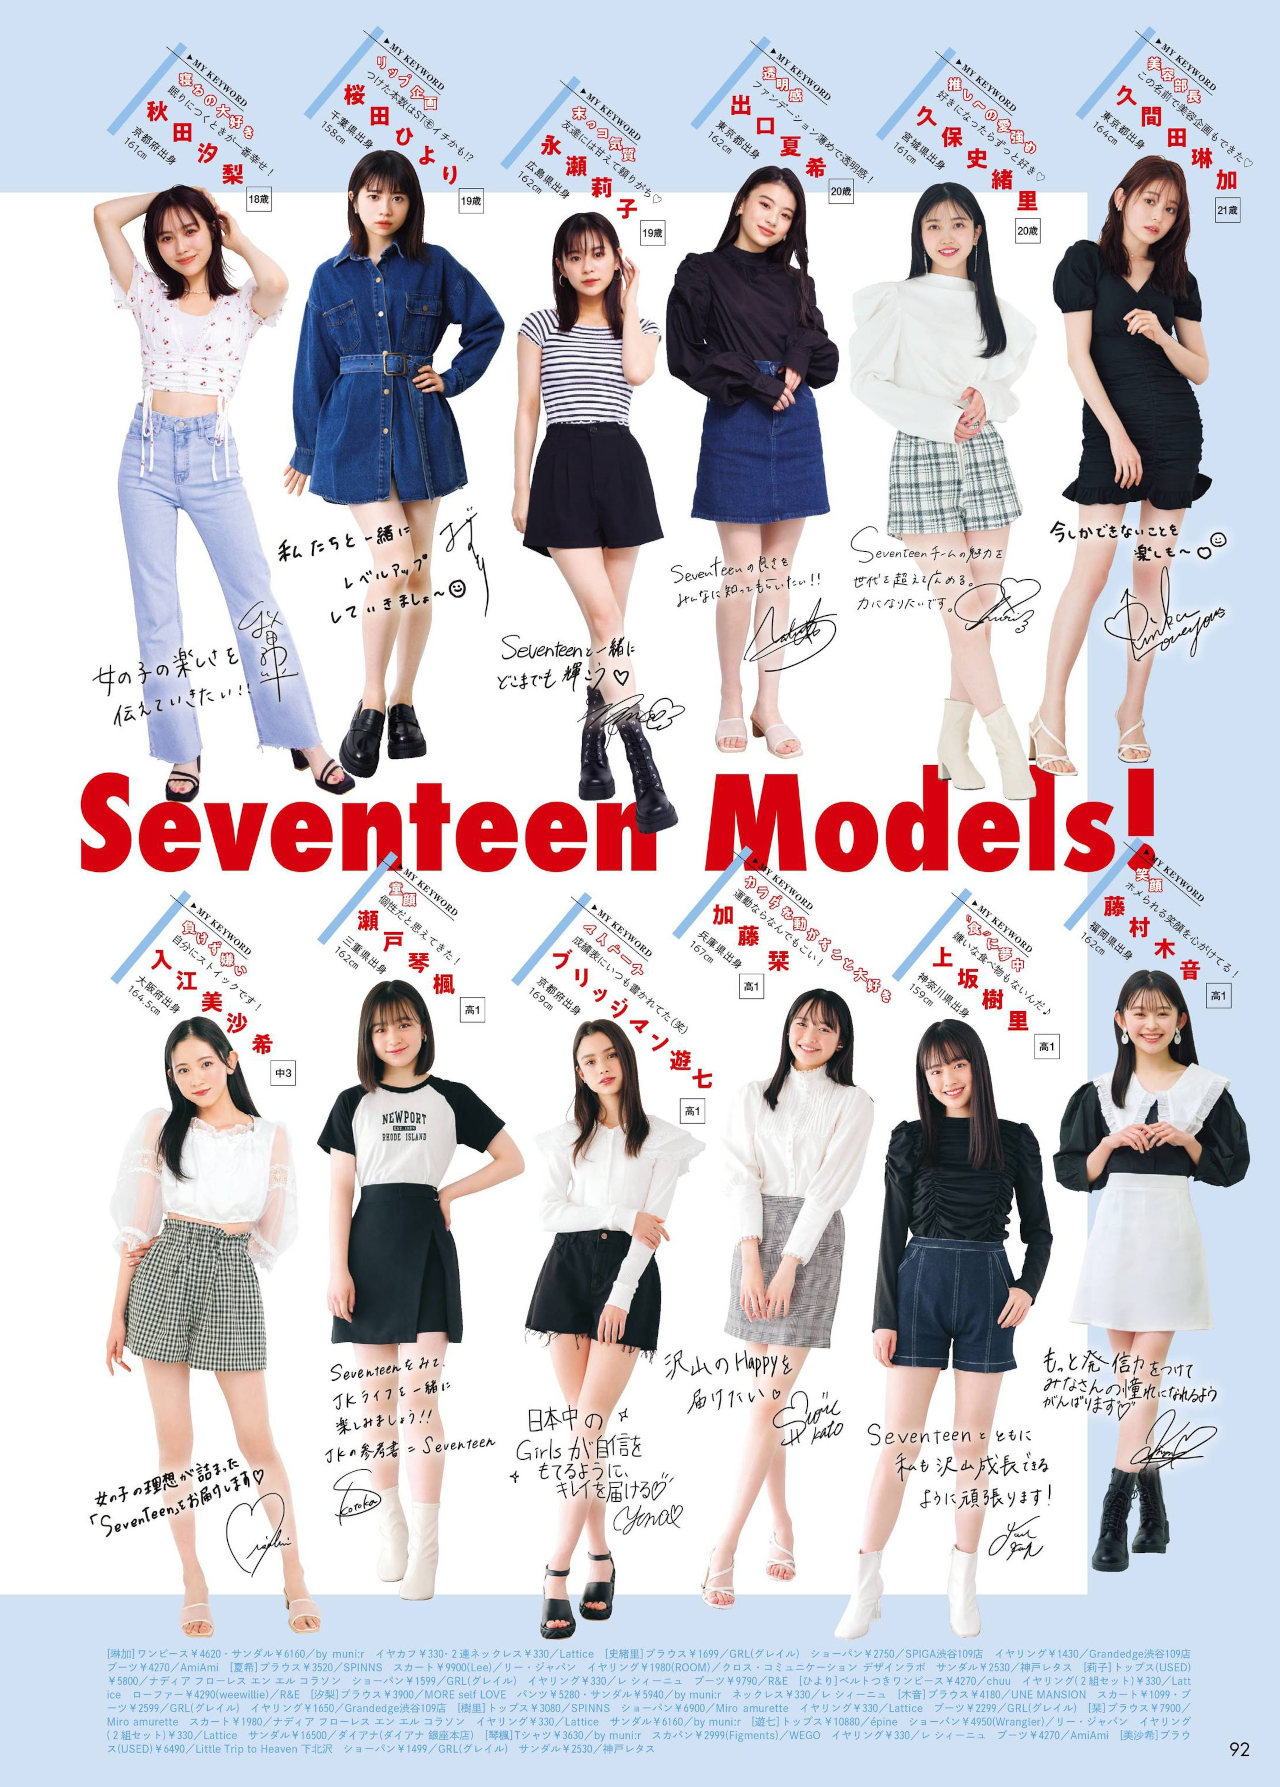 Seventeenモデルスペシャルブック2022, Seventeen セブンティーン 2022 春号